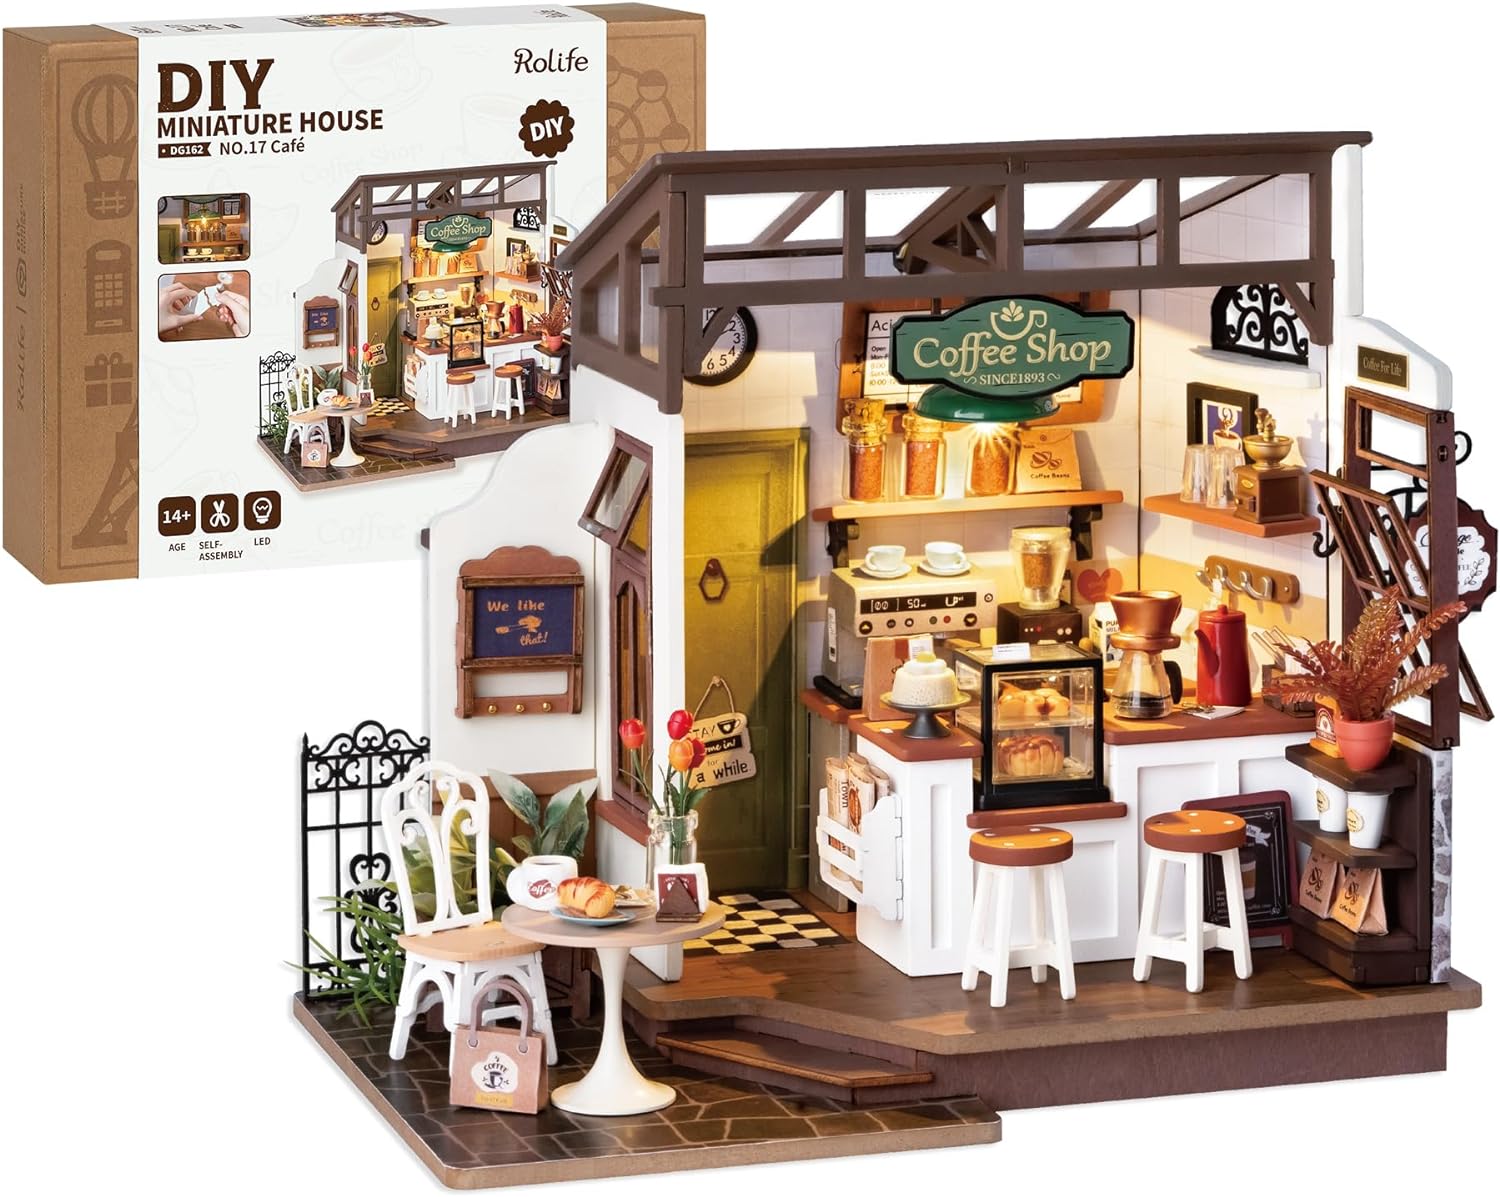 No.17 Cafe DIY Miniature House